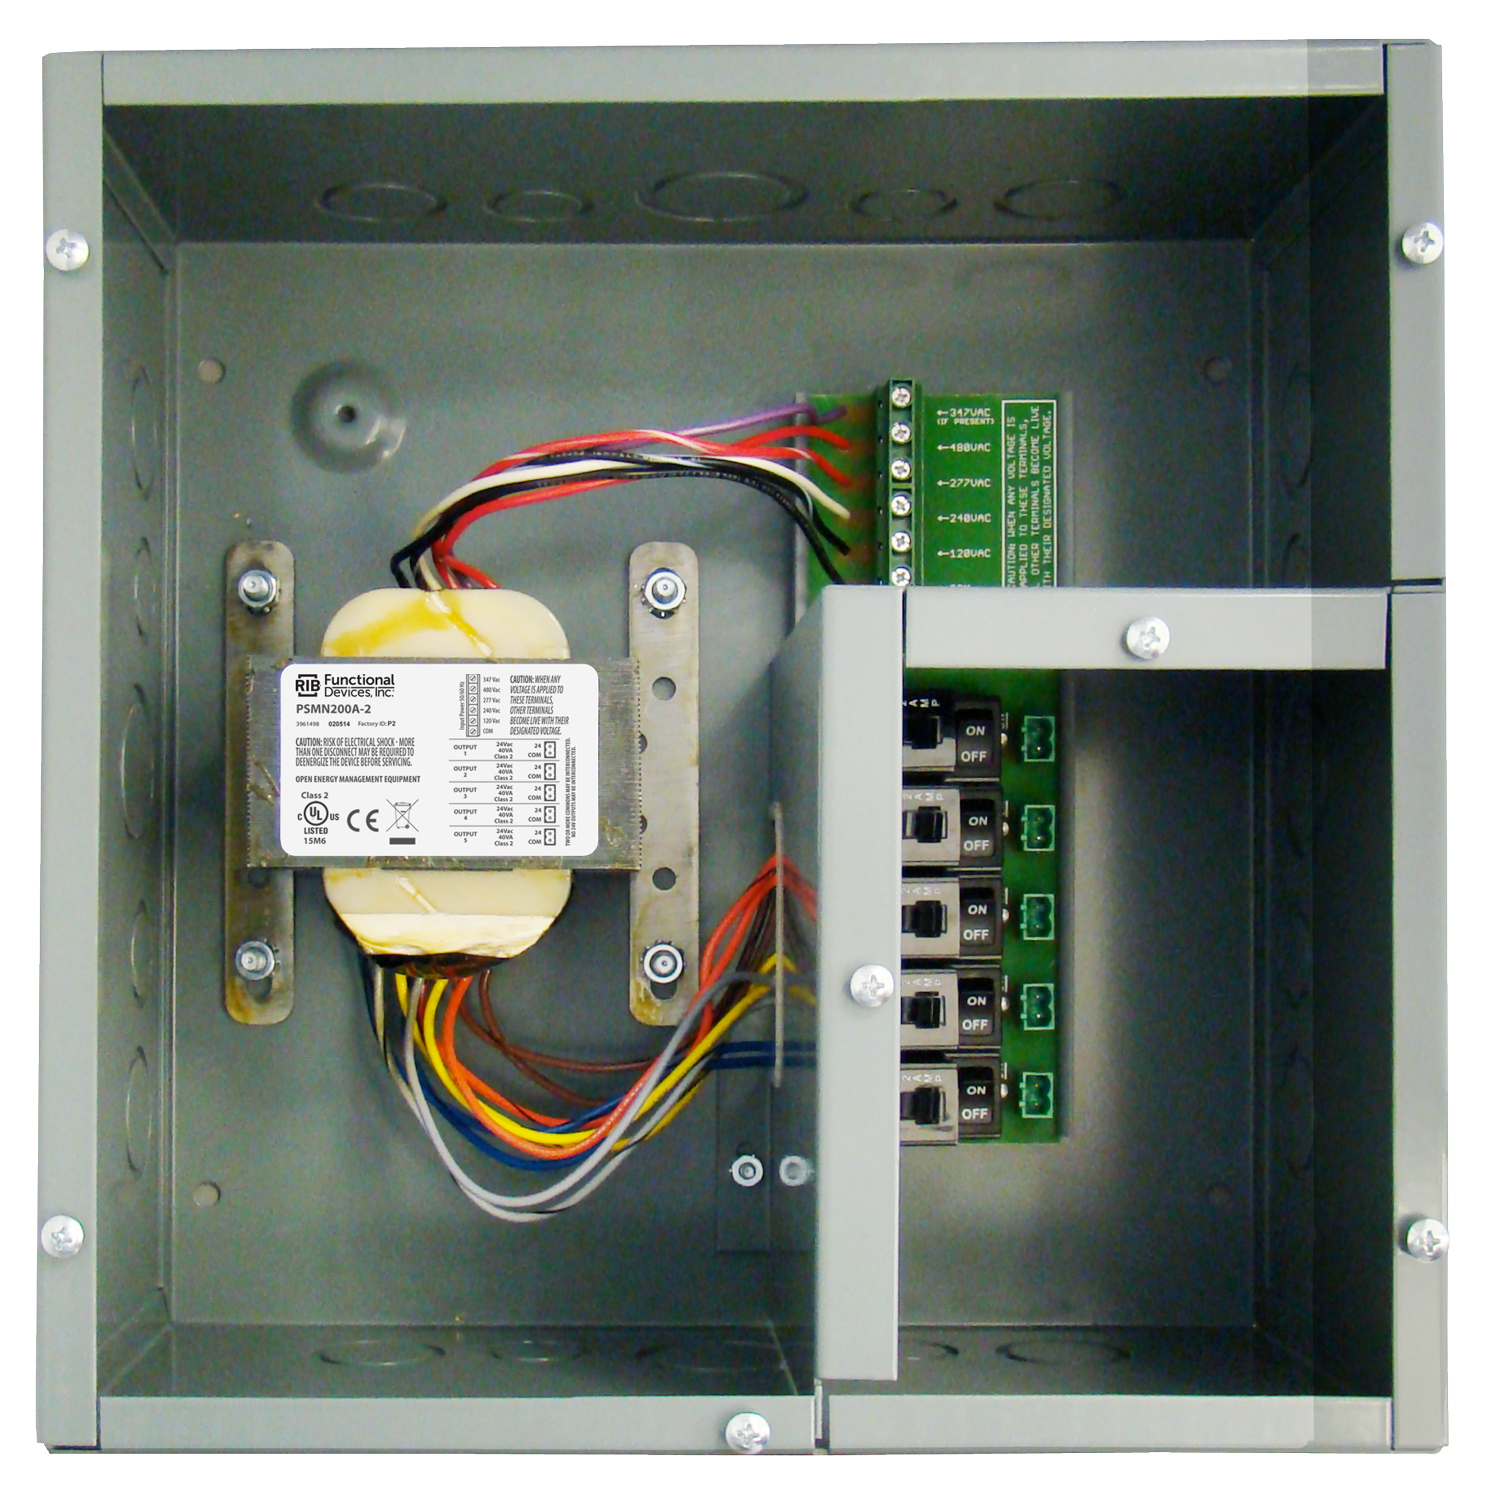 AC Power Supply, Separate Wiring Compartment, Circuit Break, Enclosed, 200 VA